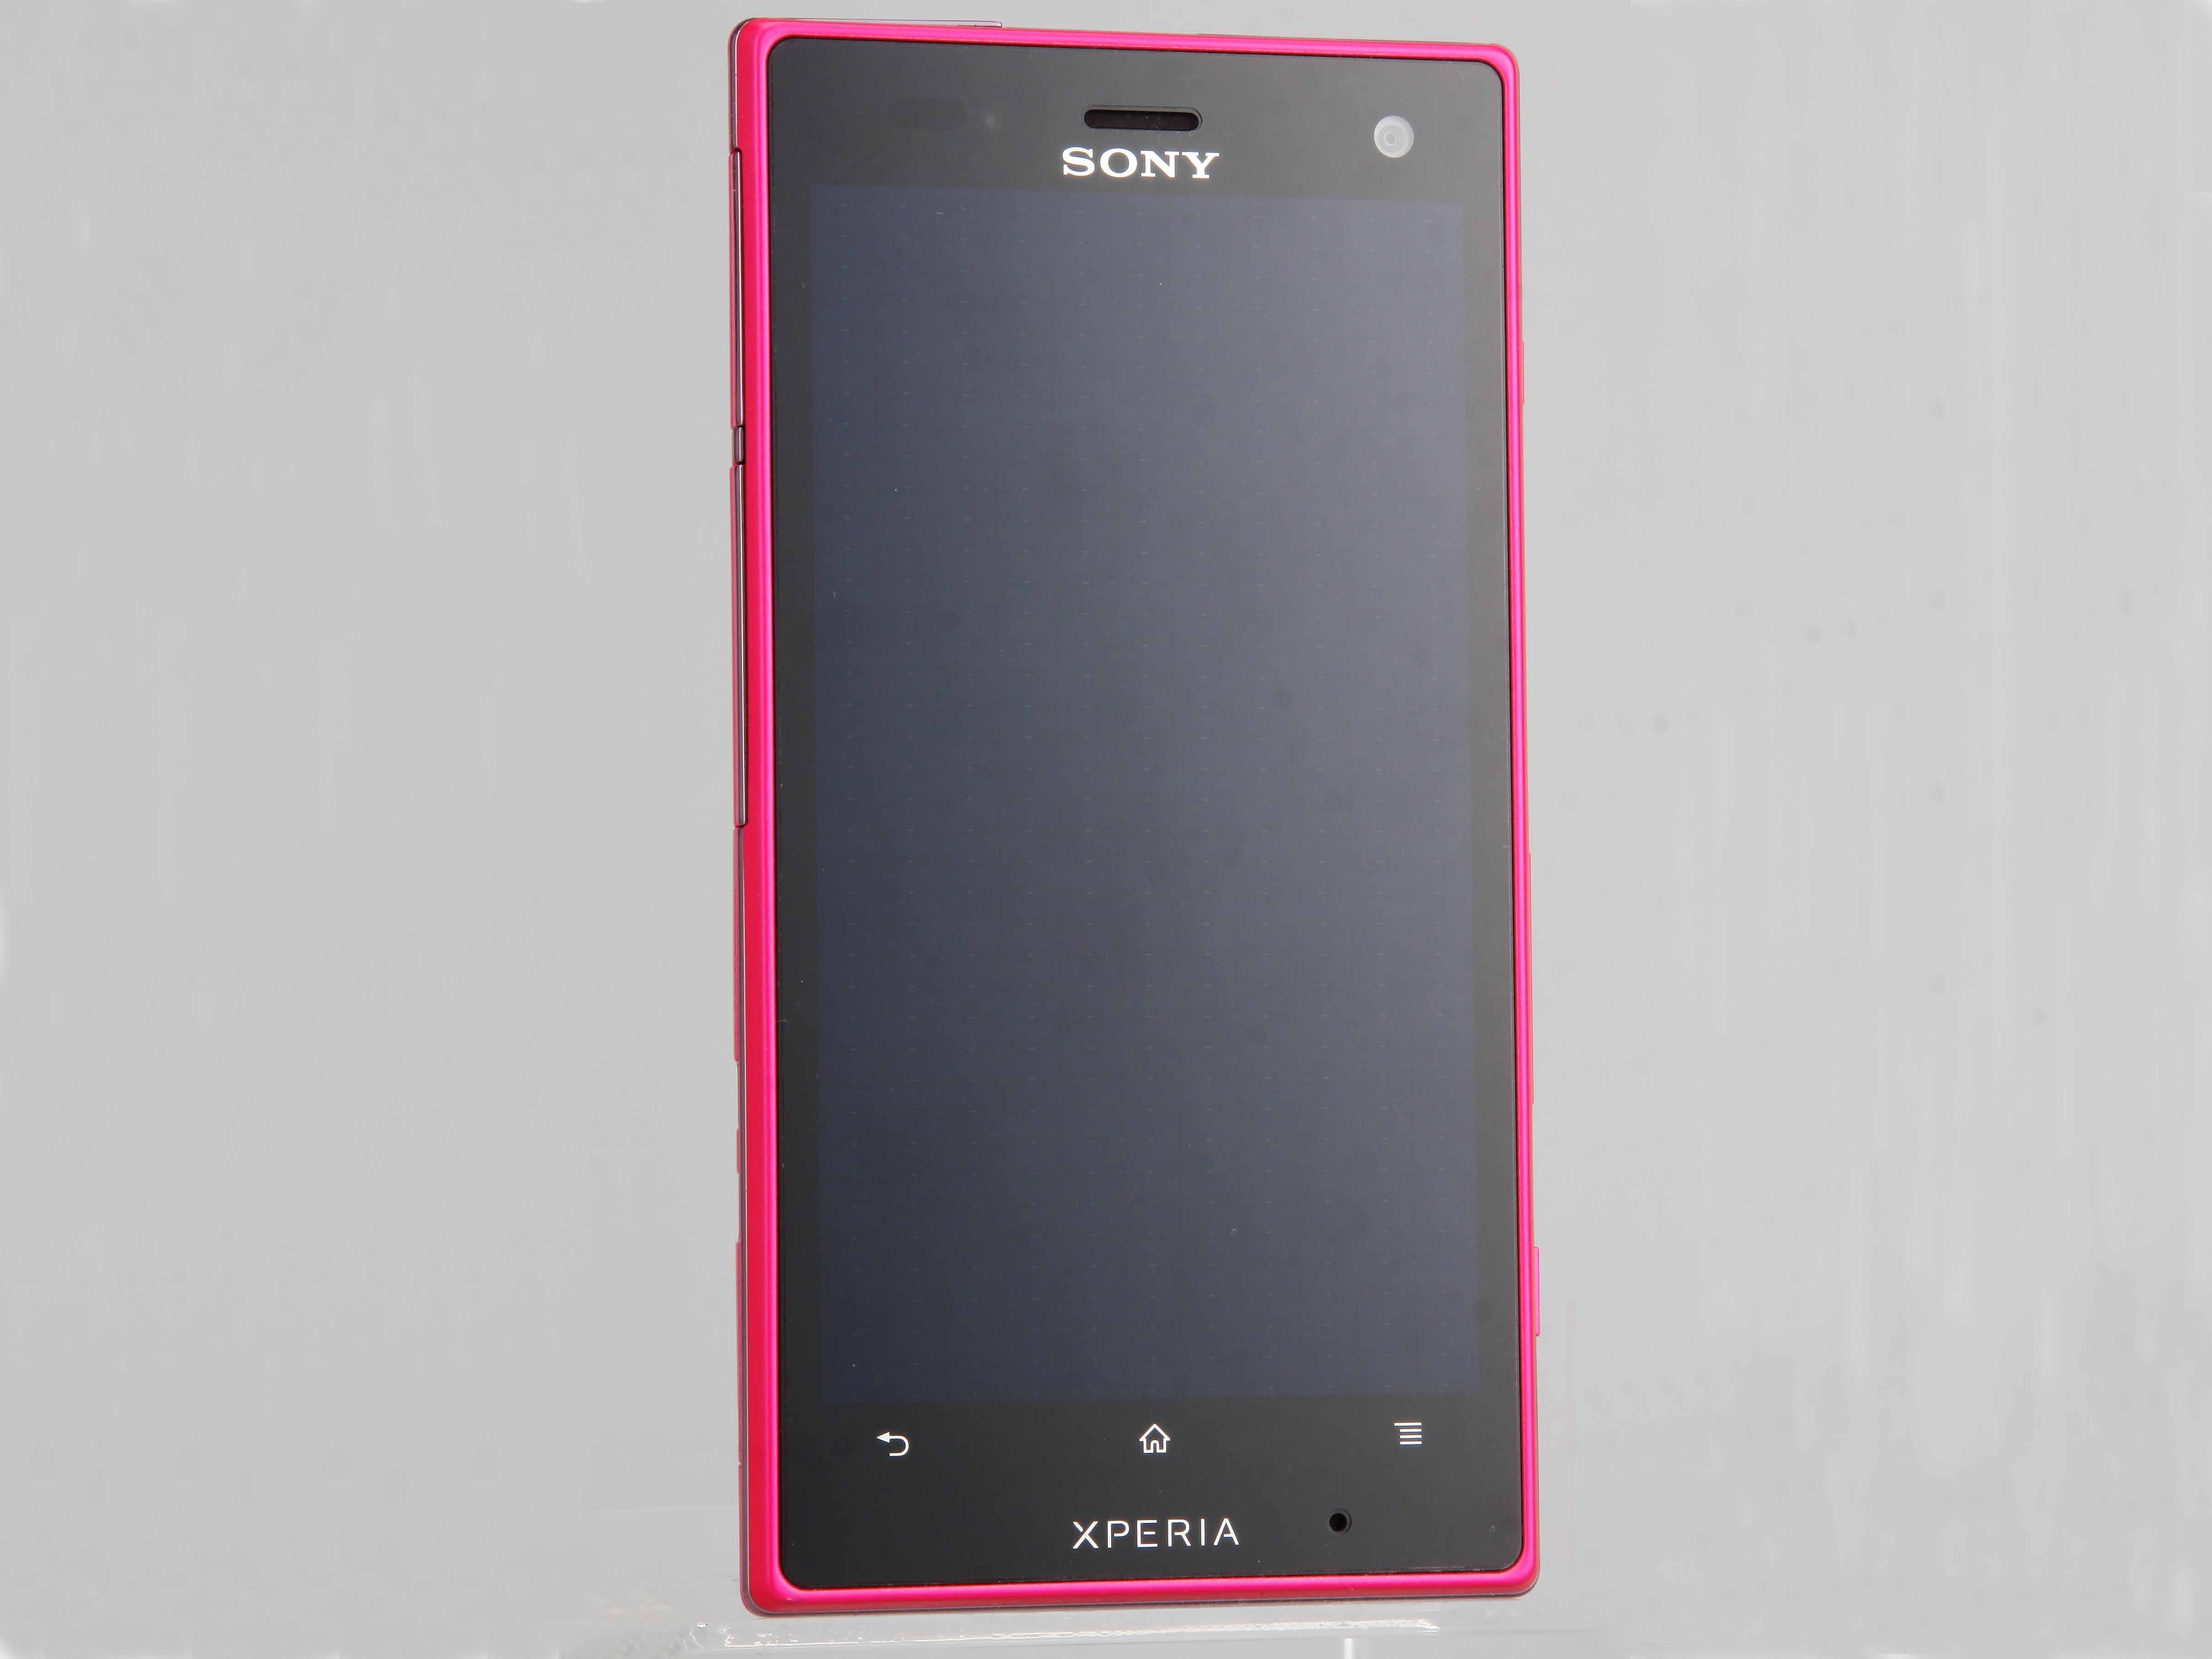 防水、防塵 Sony Xperia acro S 評測，水中實拍、效能跑分看過來